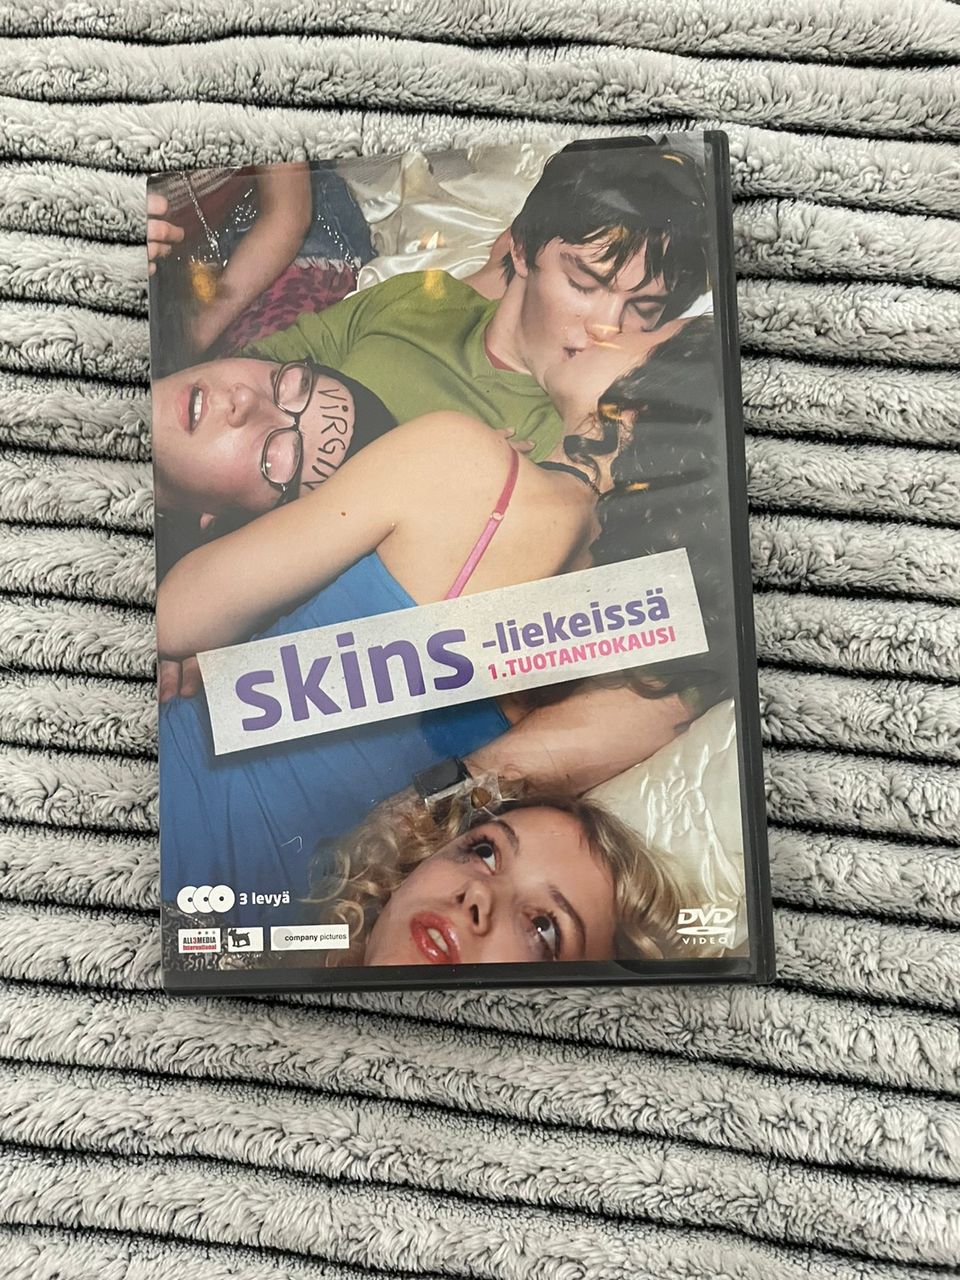 Myydään Skins liekeissä ensimmäinen tuotantokausi DVD